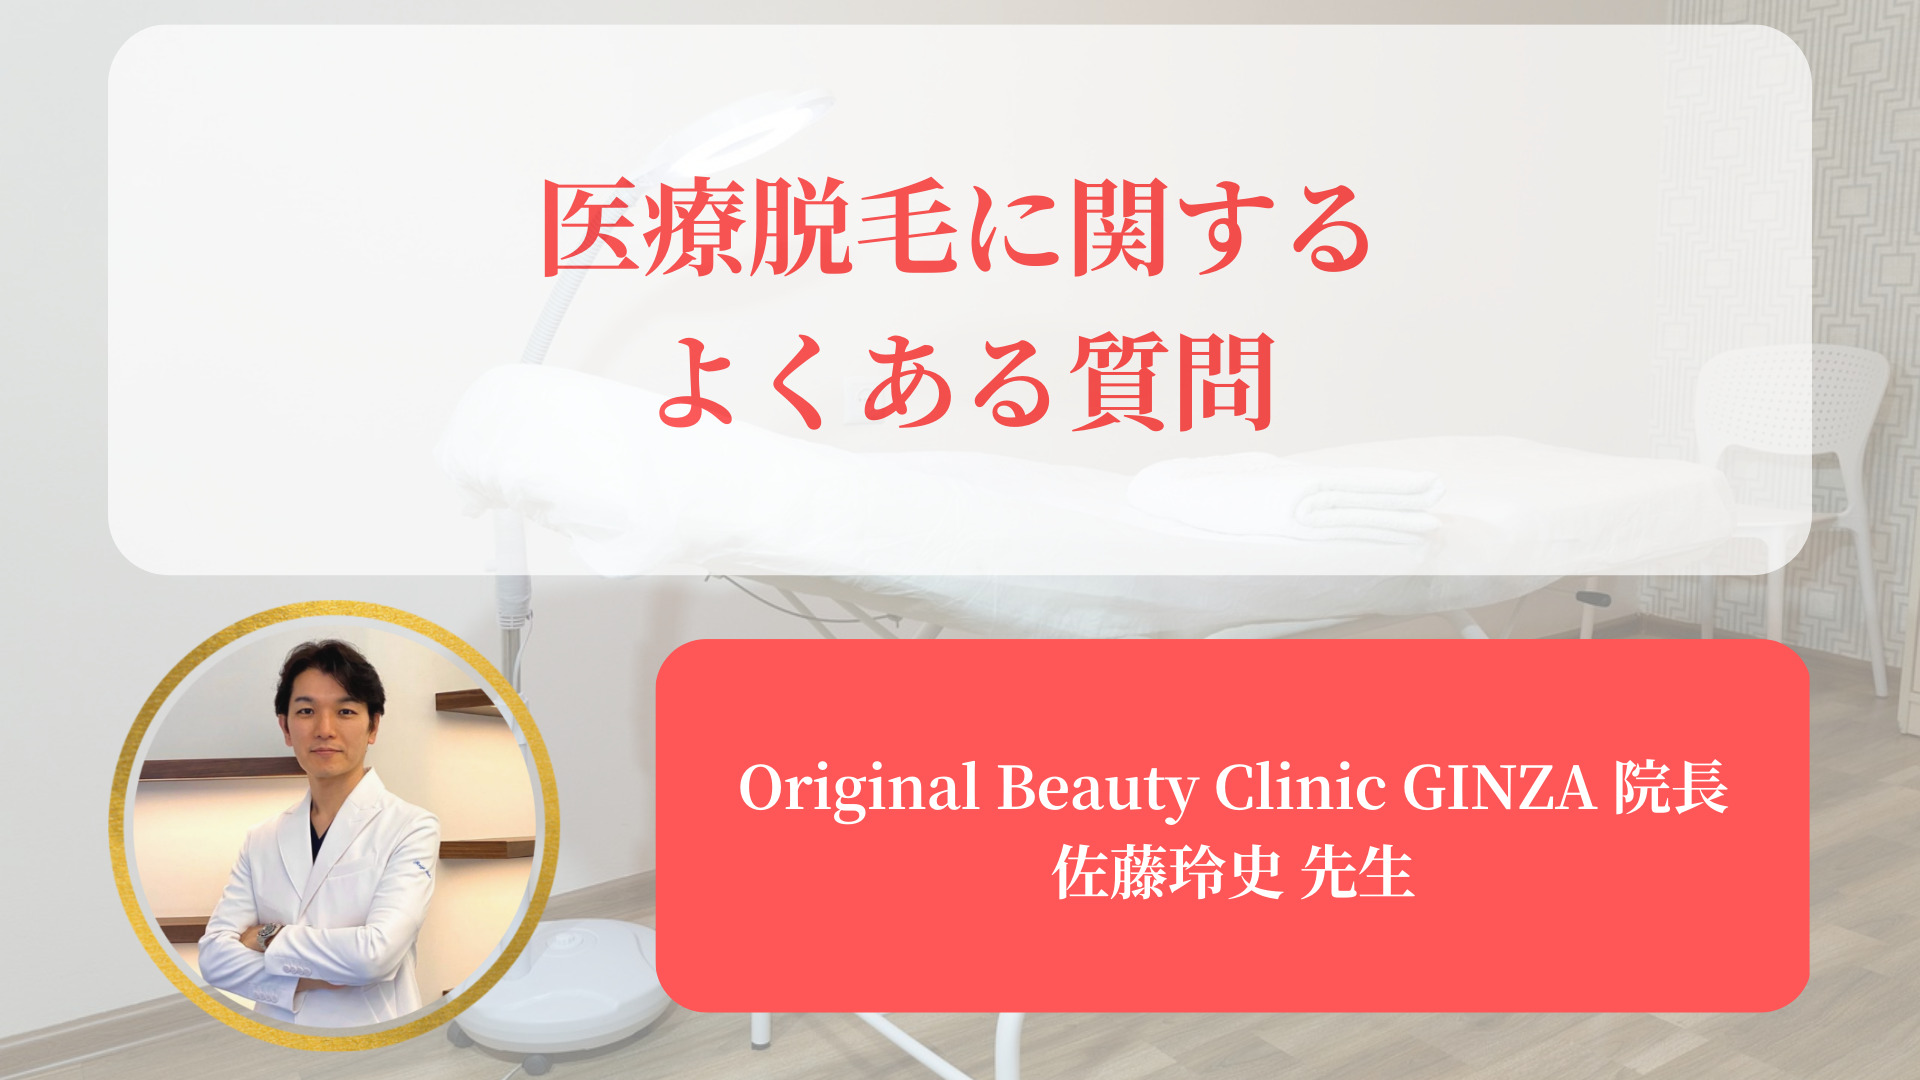 医療脱毛のよくある質問にOriginal Beauty Clinic GINZA院長の佐藤玲史先生が回答しています。